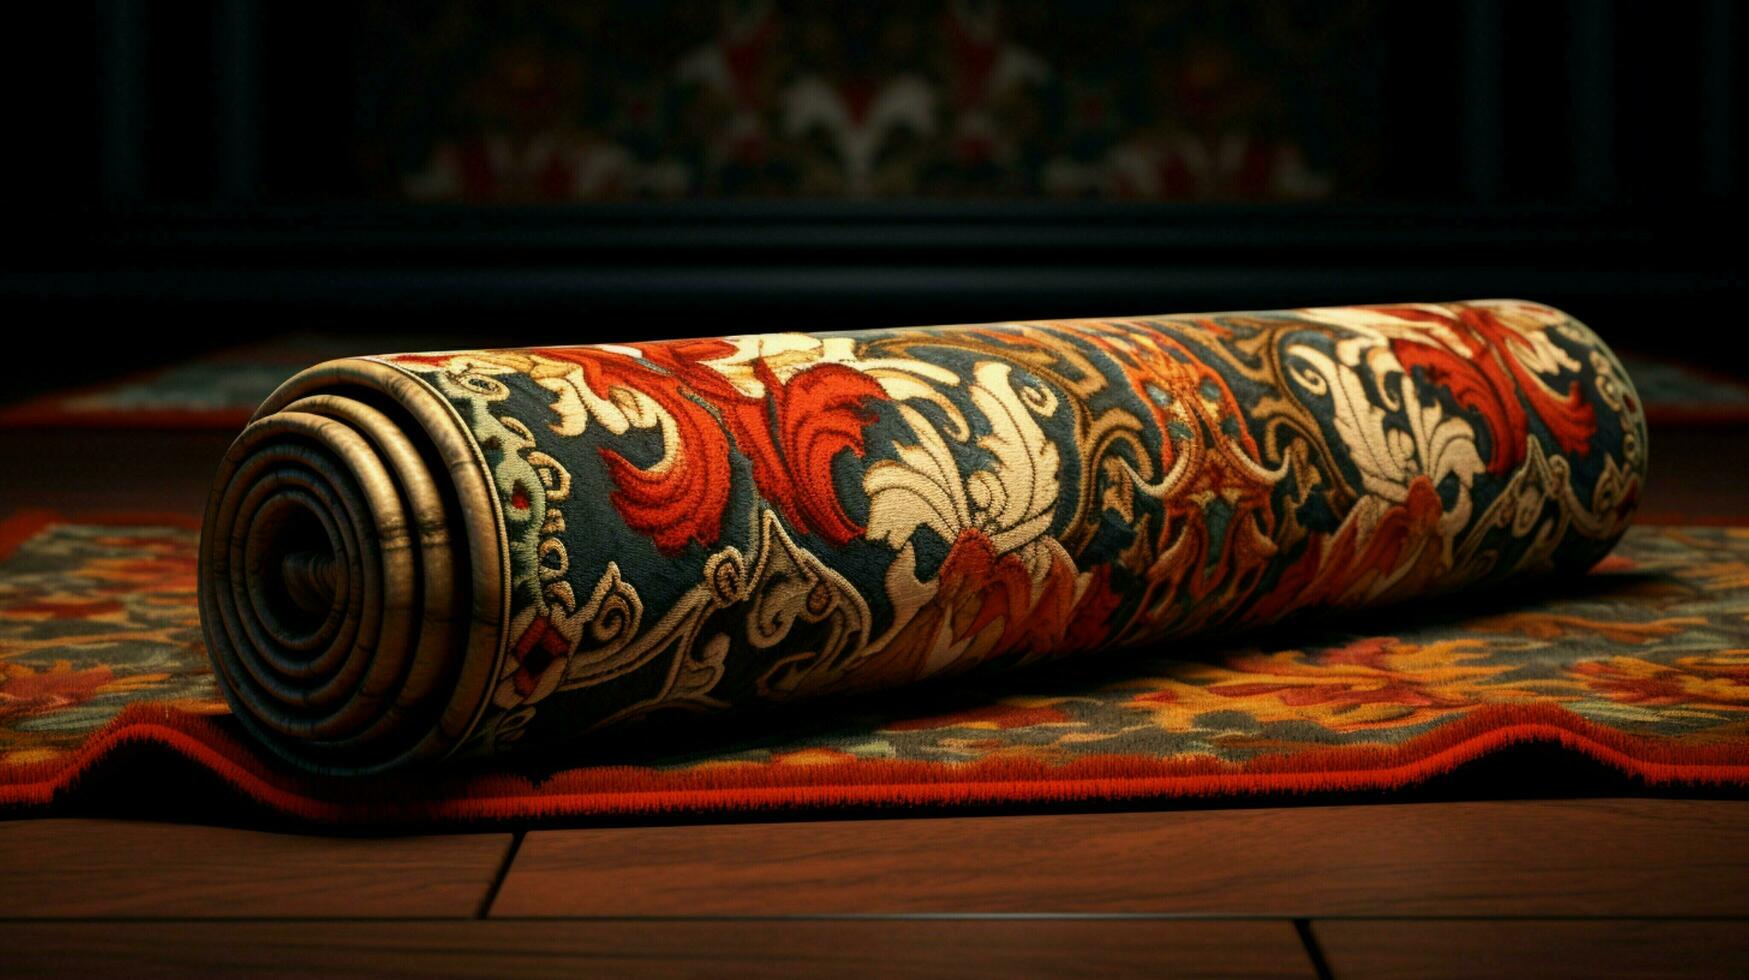 oude tapijt gerold omhoog overladen borduurwerk ontwerp foto